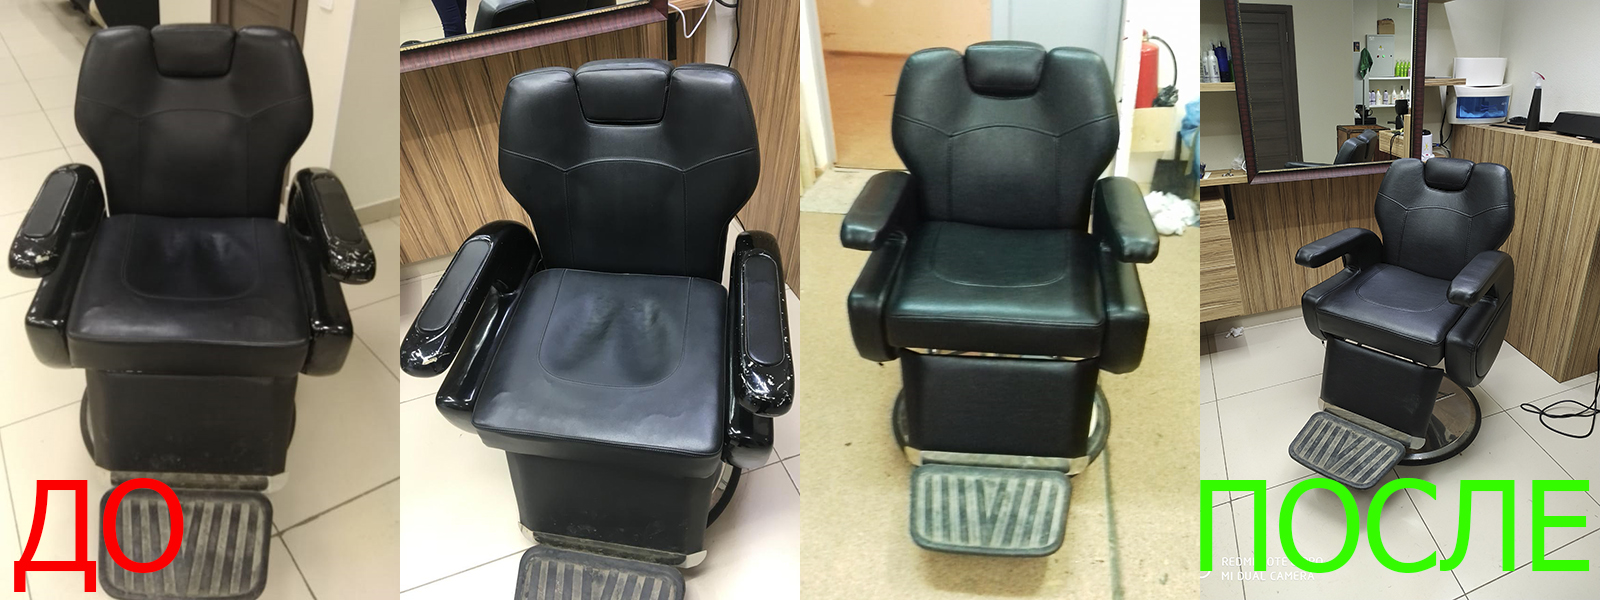 Обшивка стульев в Краснодаре от опытных мастеров компании MebelProfi - 100% гарантия